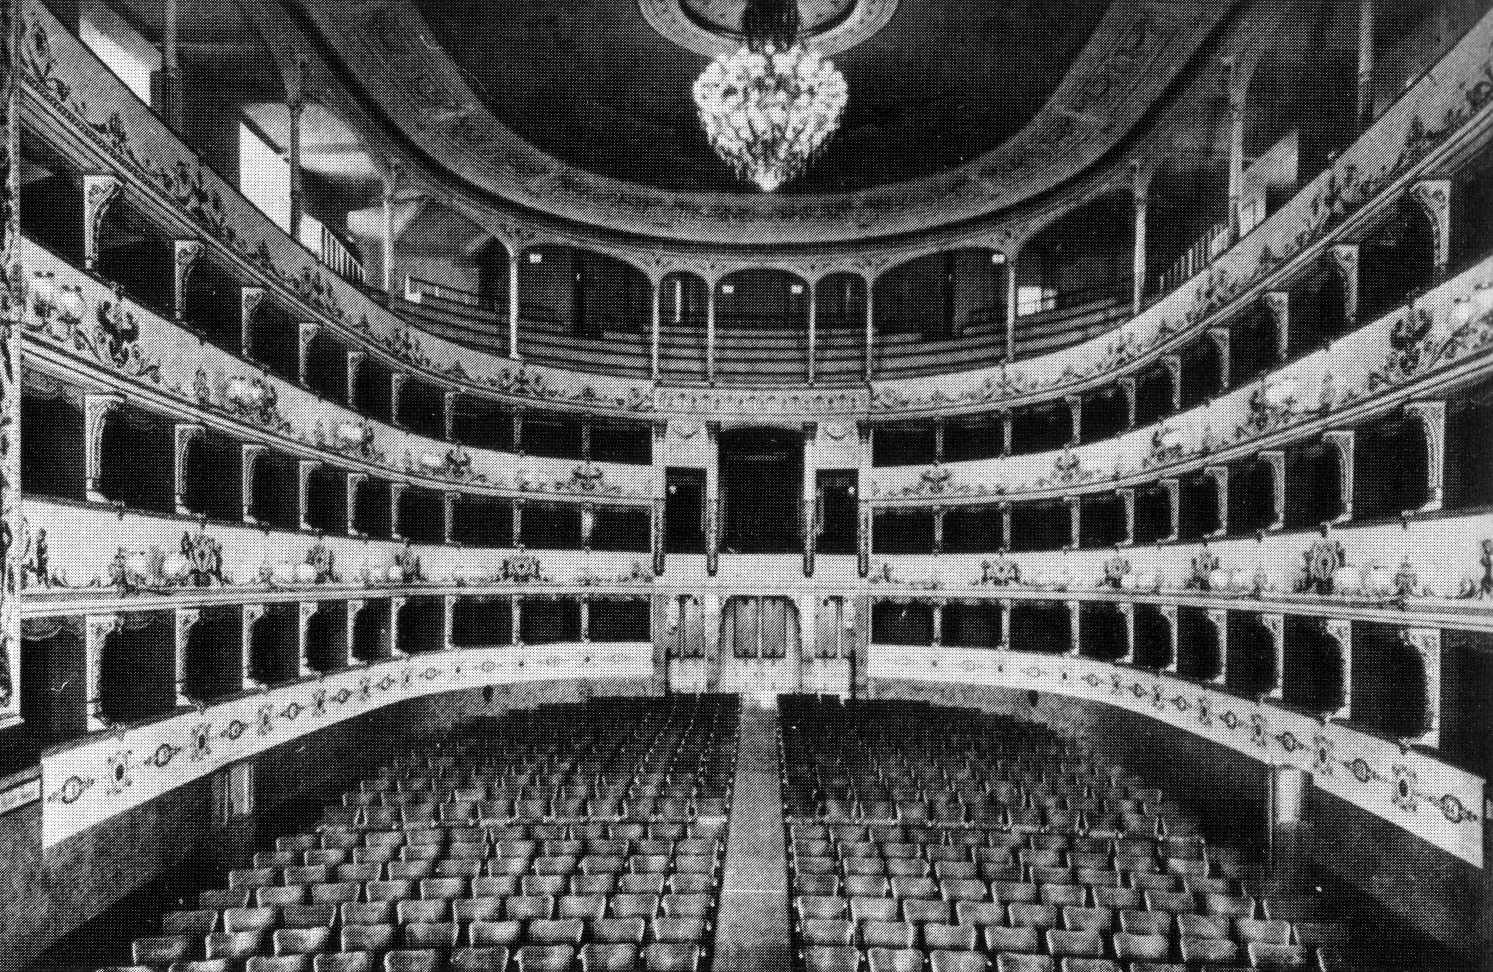 Teatro della Pergola - Wikipedia